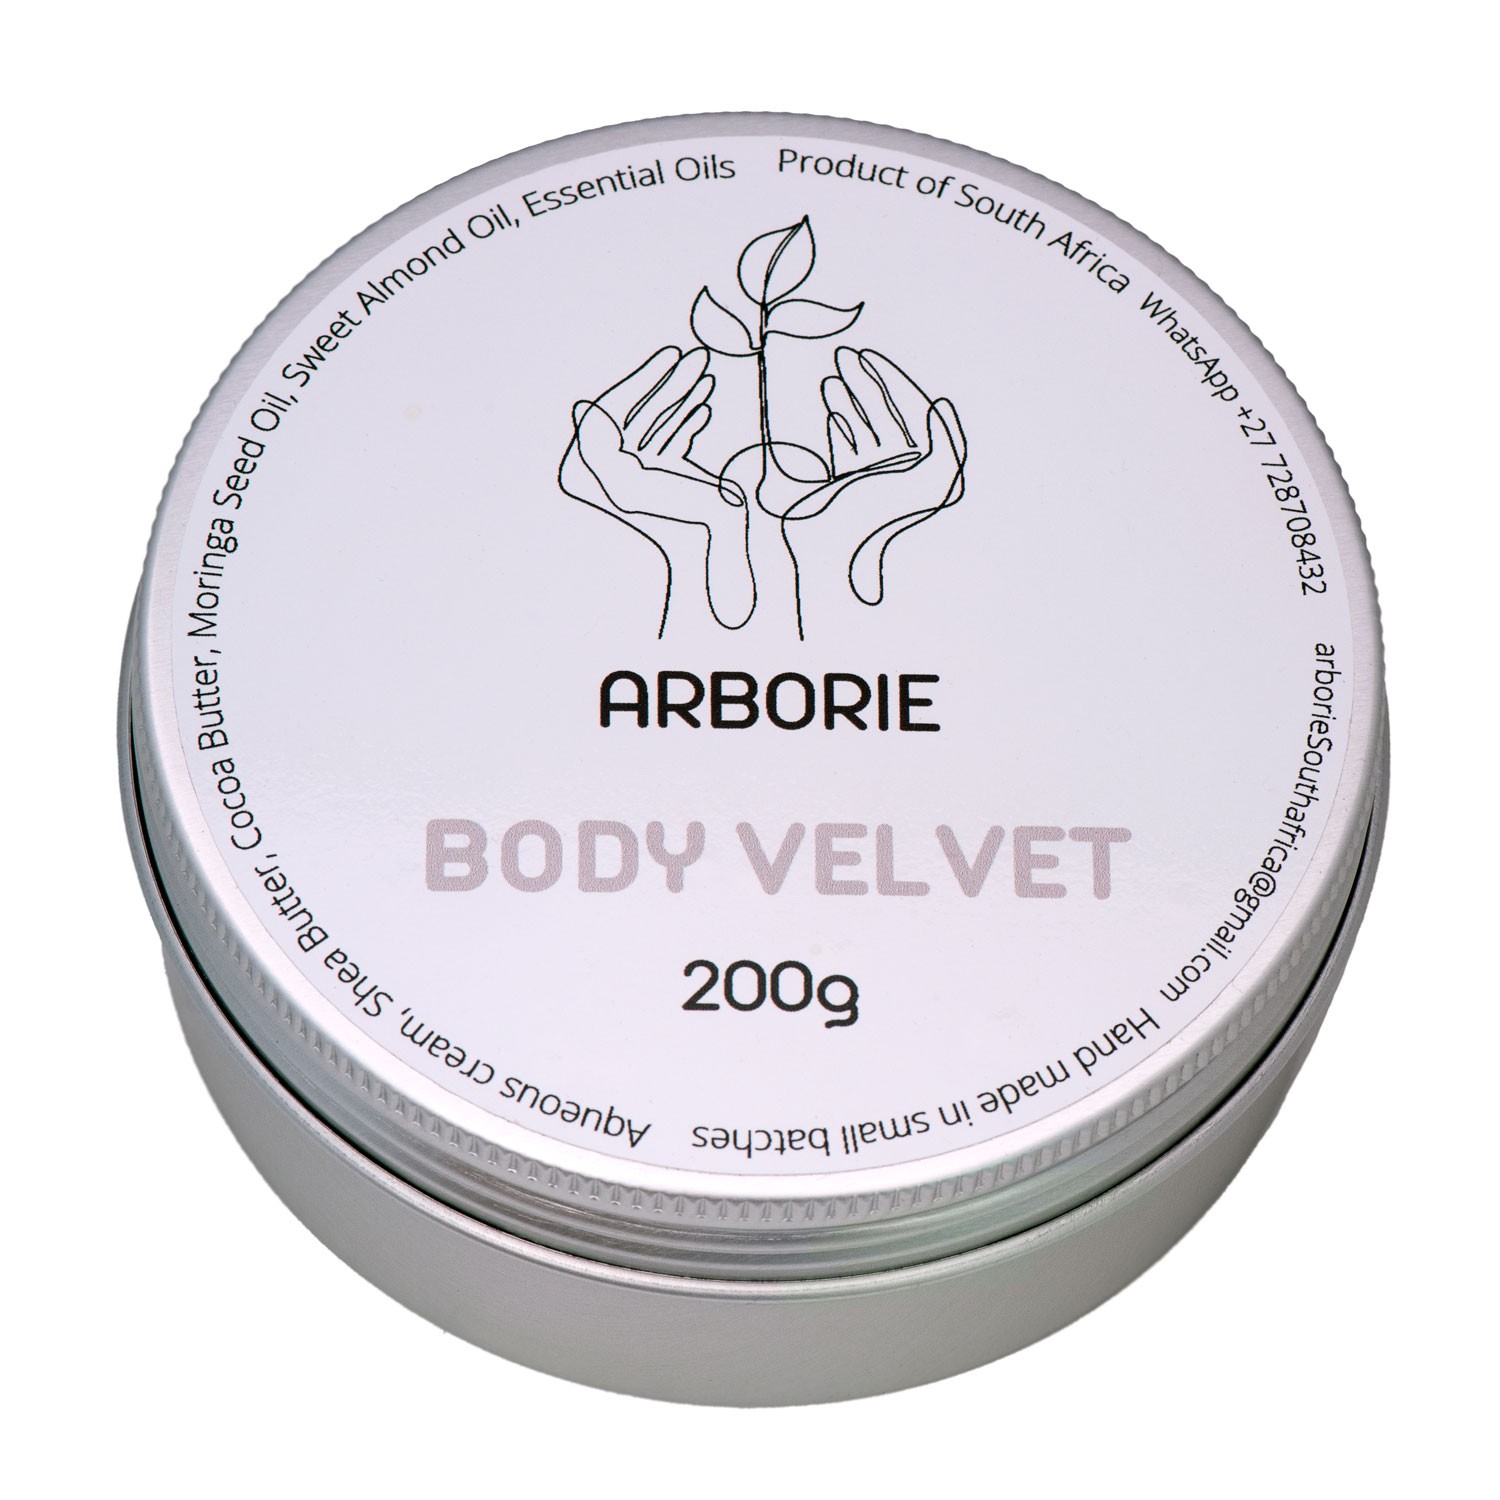 Arborie Body Velvet